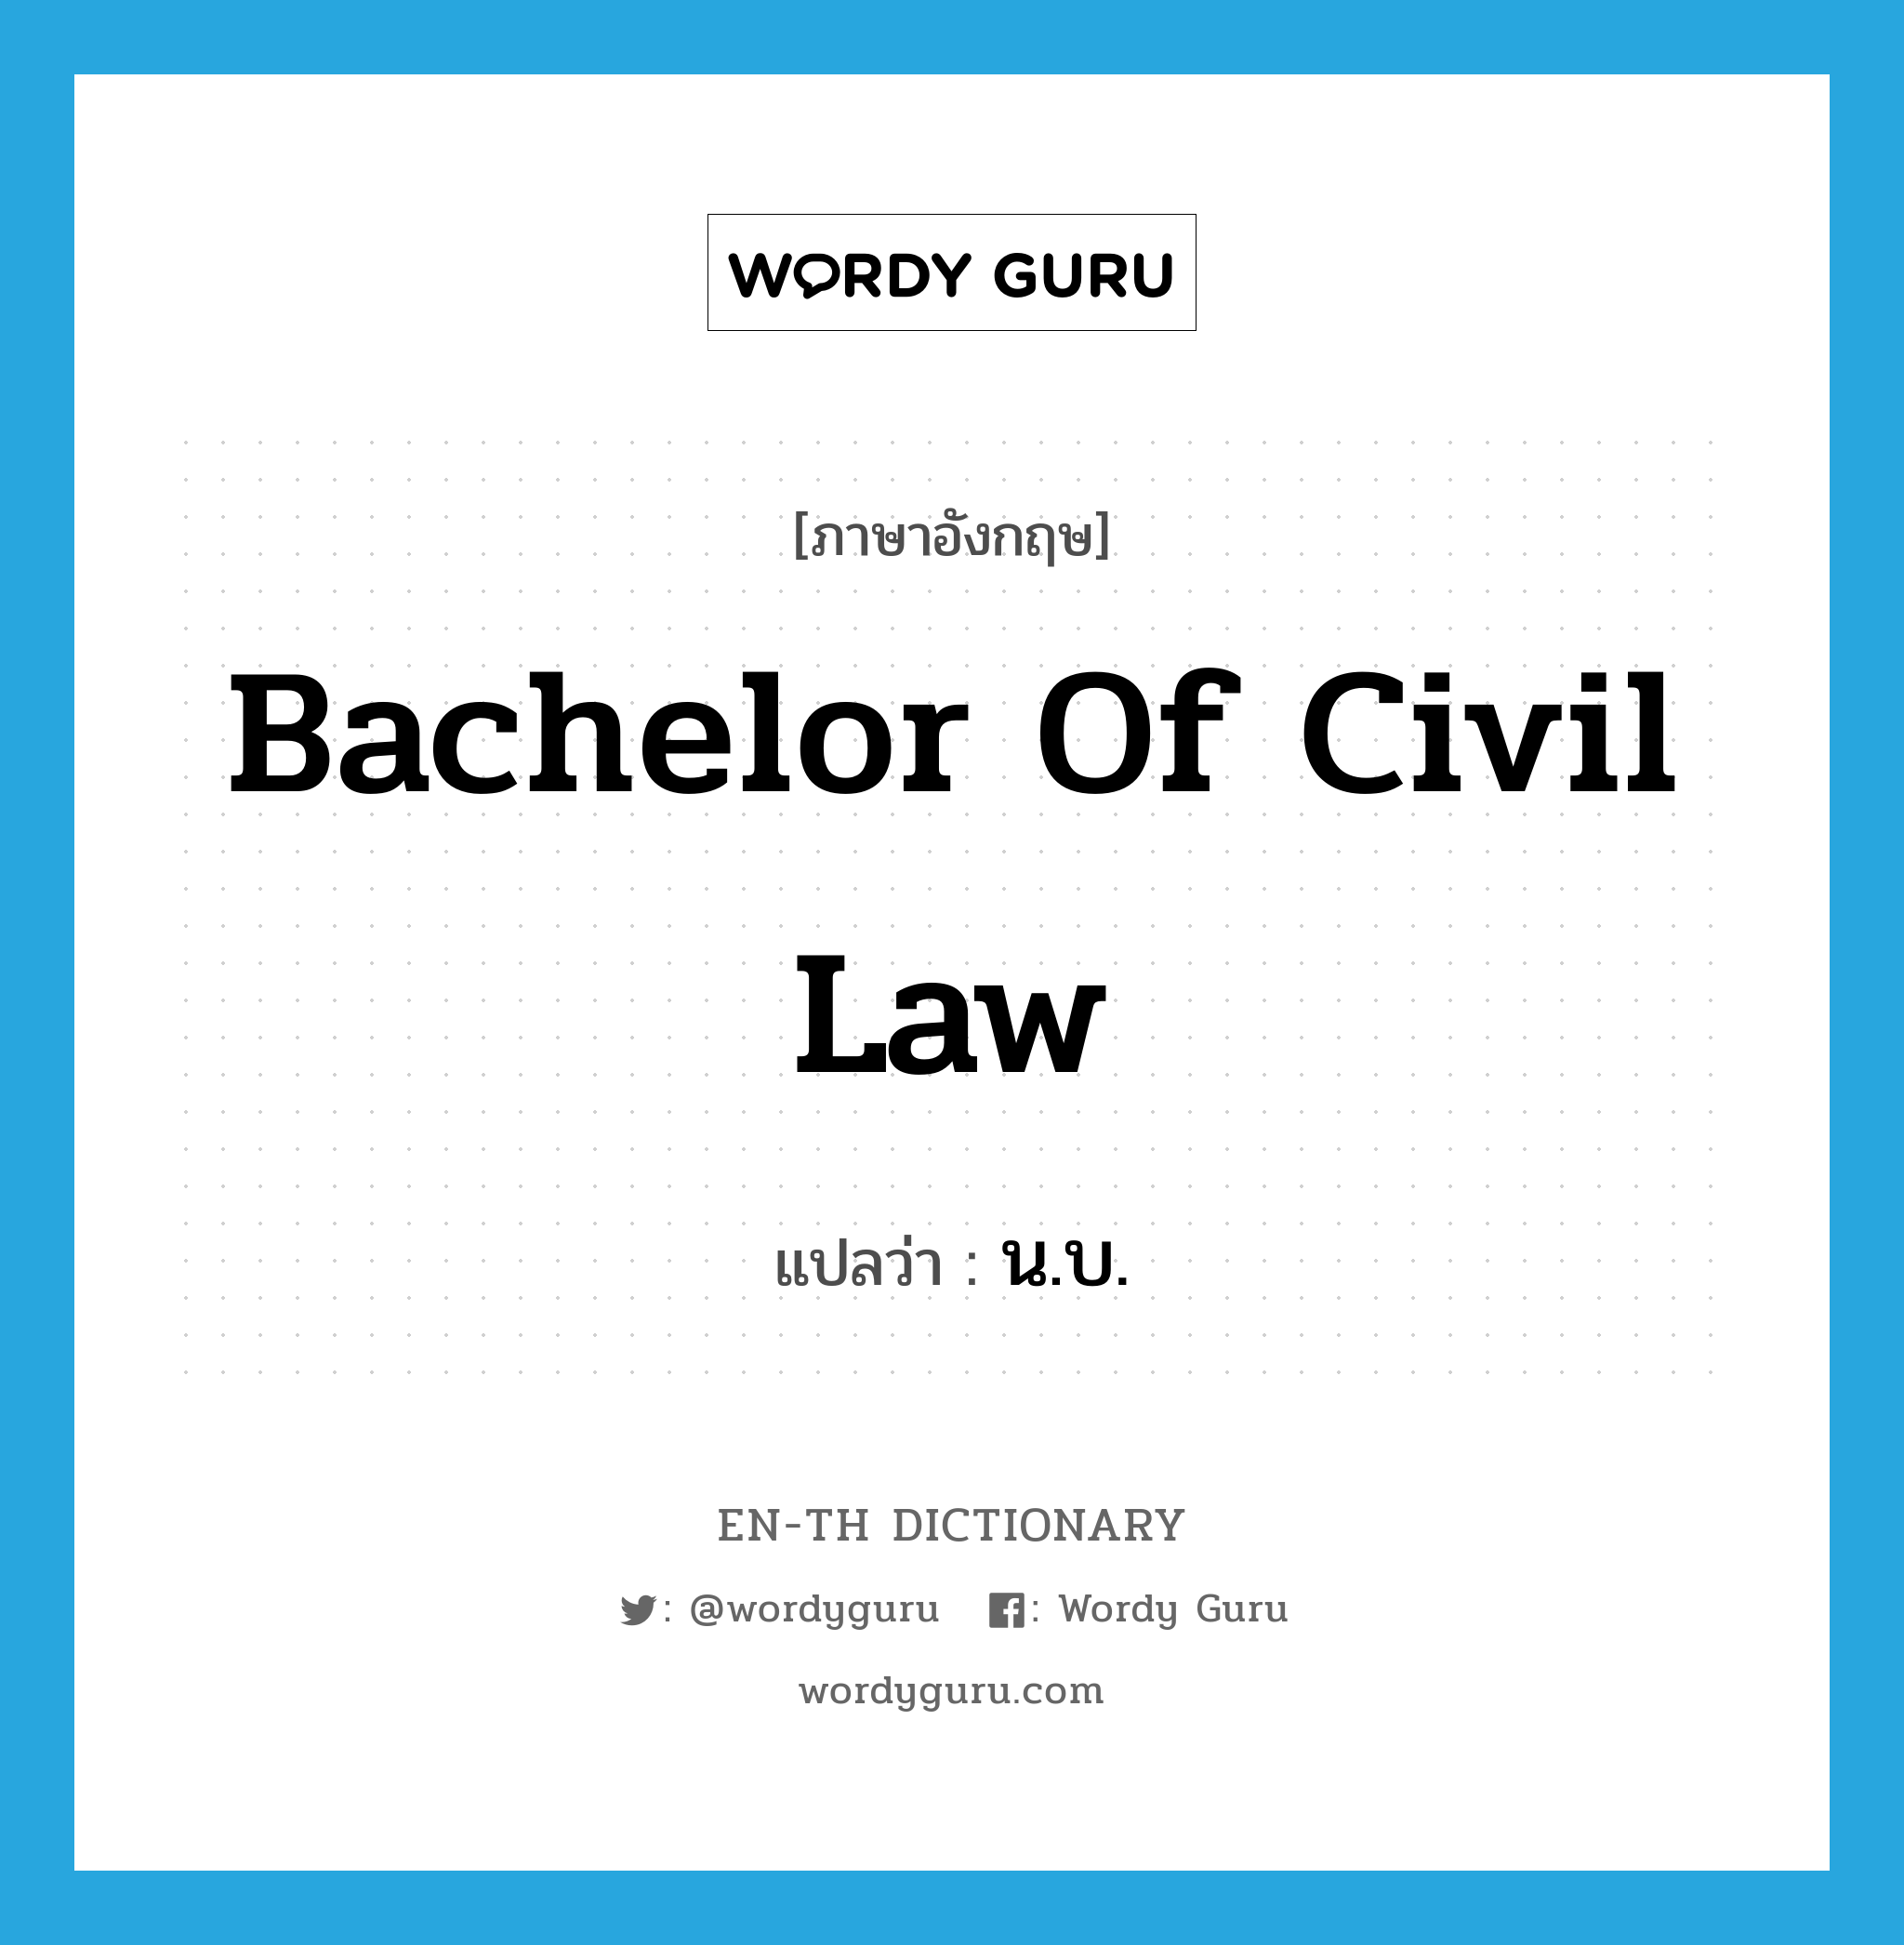 น.บ. ภาษาอังกฤษ?, คำศัพท์ภาษาอังกฤษ น.บ. แปลว่า Bachelor of Civil Law ประเภท N หมวด N